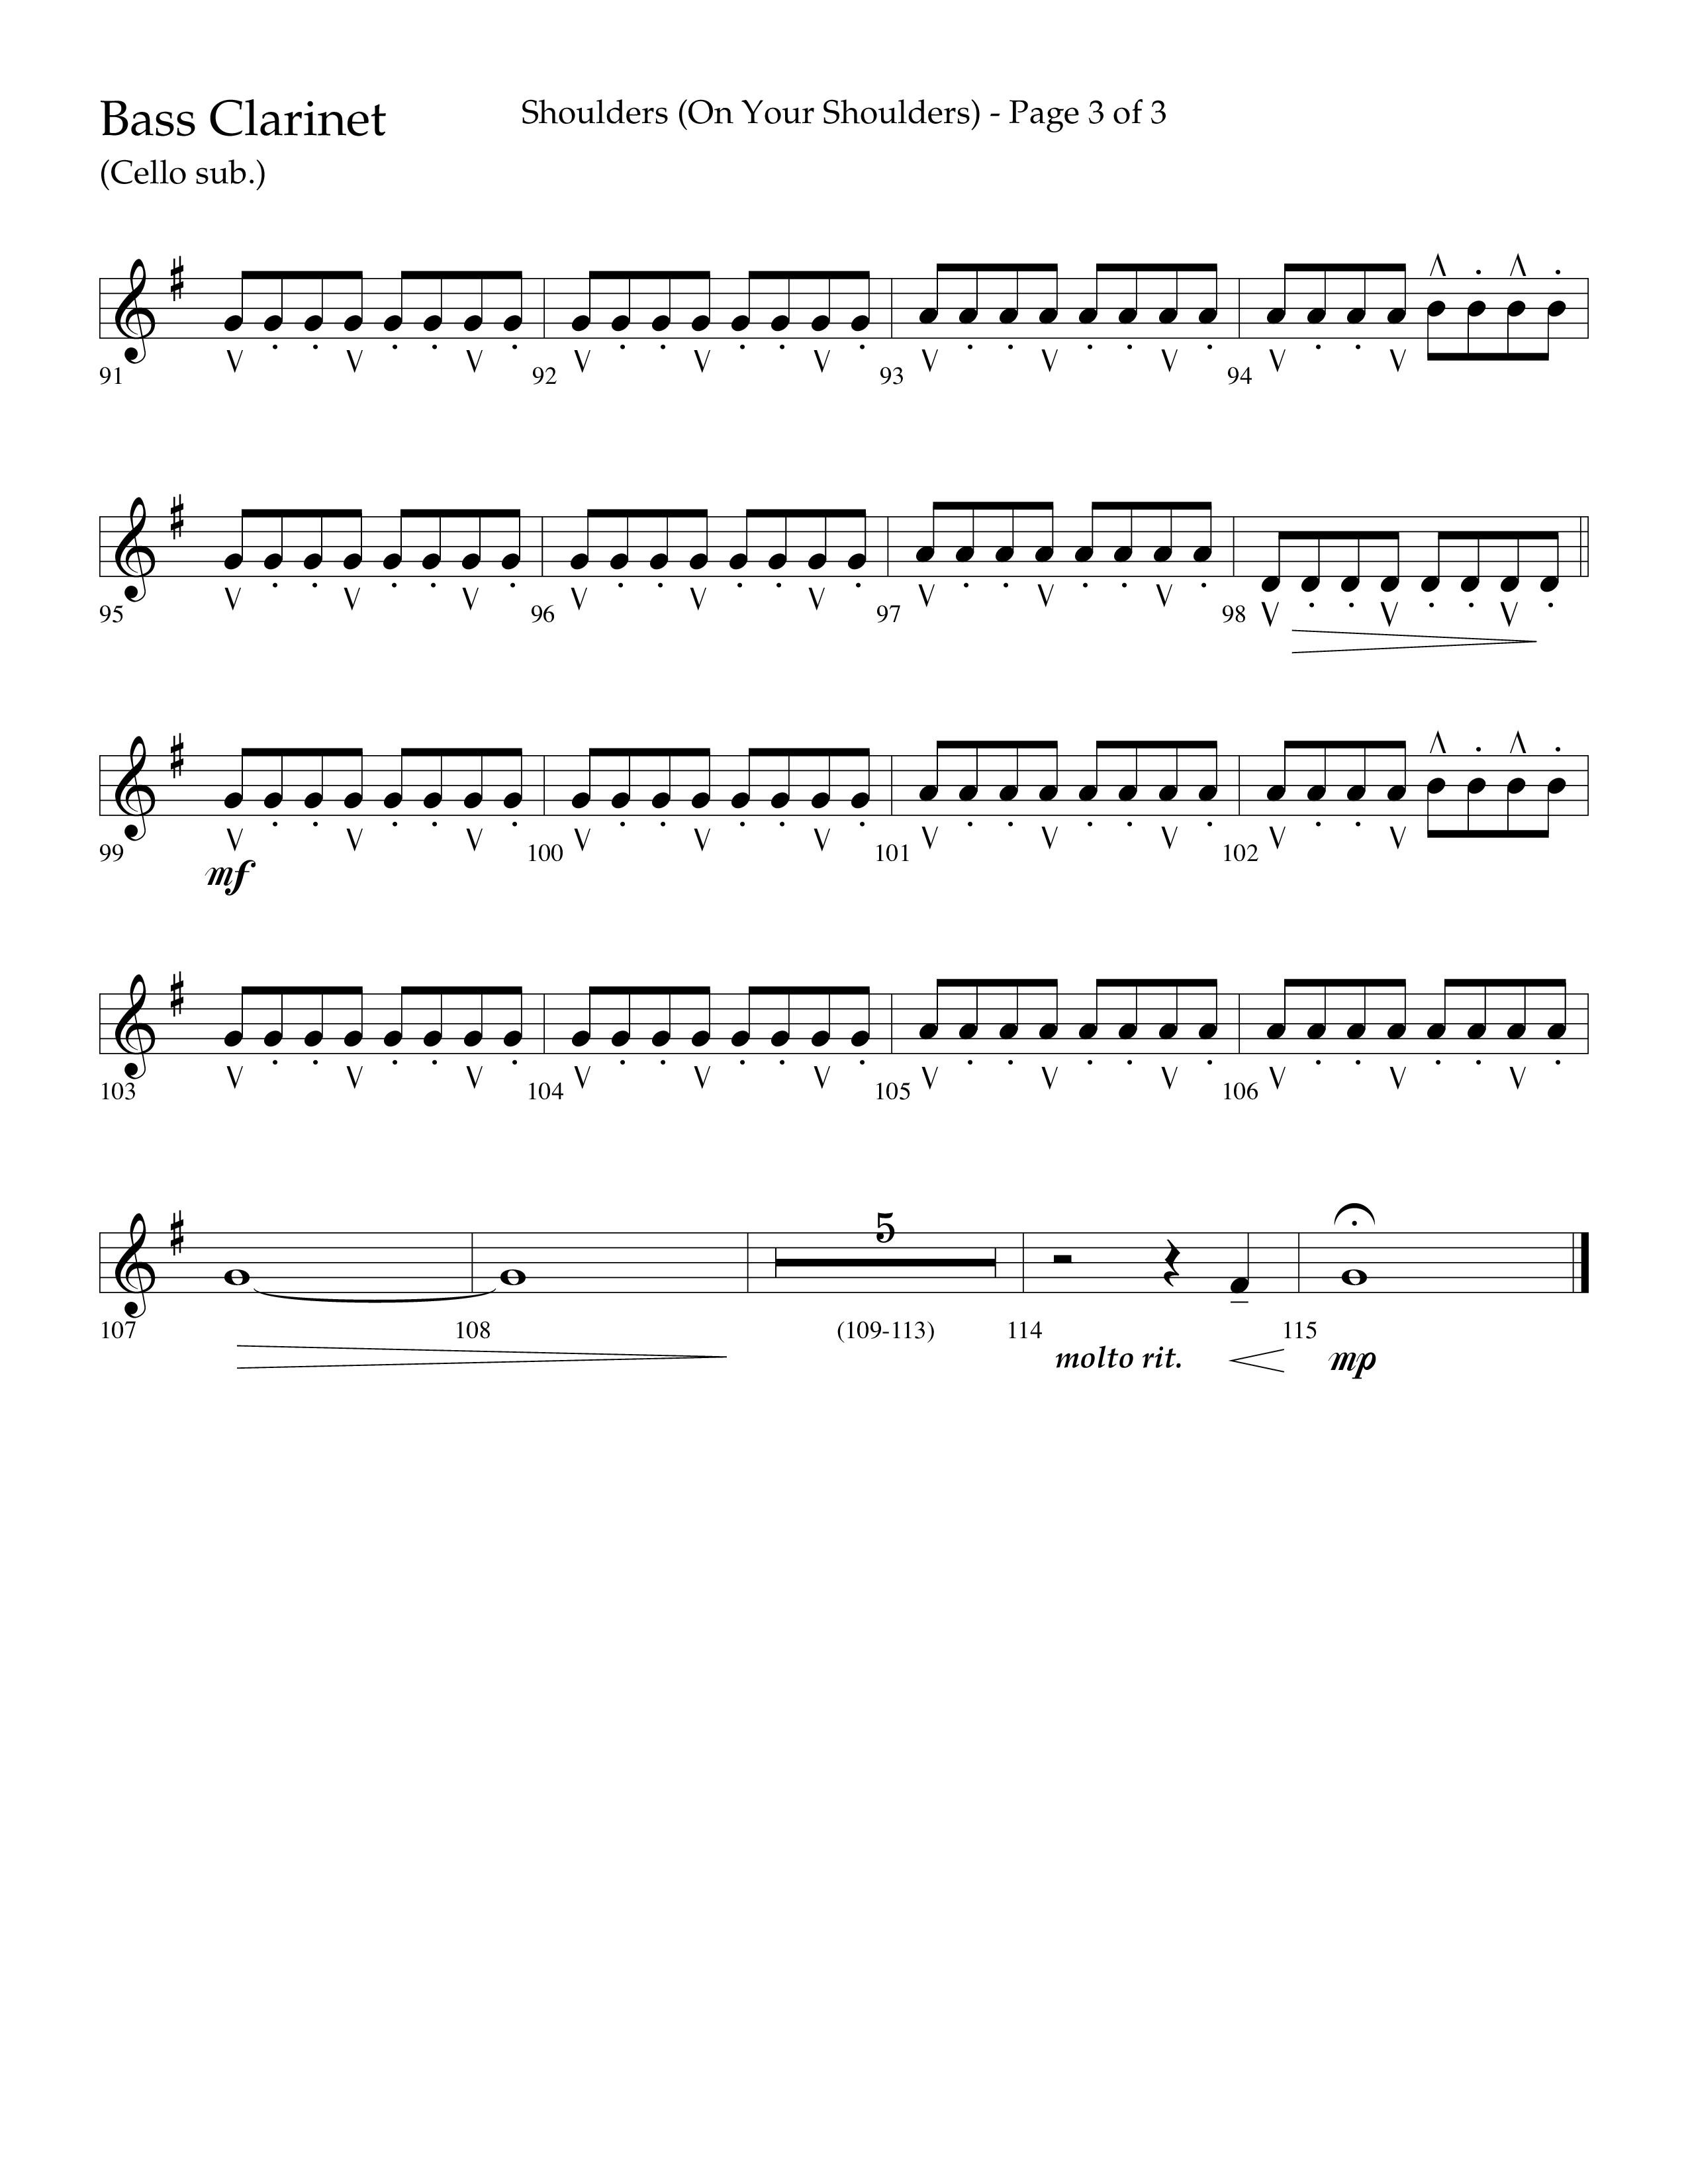 Shoulders (Choral Anthem SATB) Bass Clarinet (Lifeway Choral / Arr. Cliff Duren)